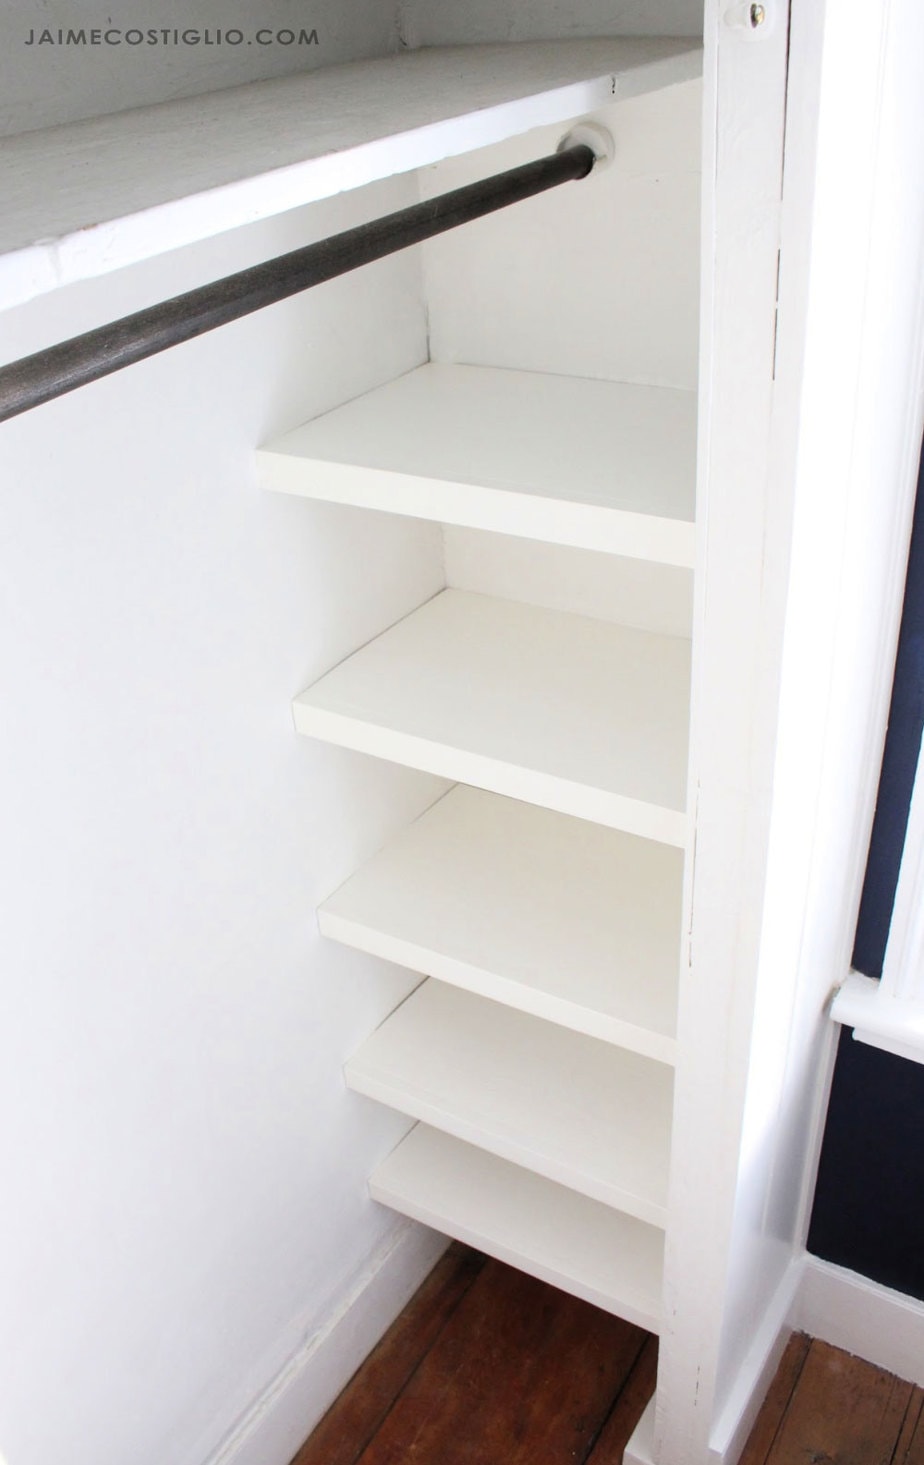 Easy Closet Shelves Jaime Costiglio, How To Make Your Own Closet Shelves